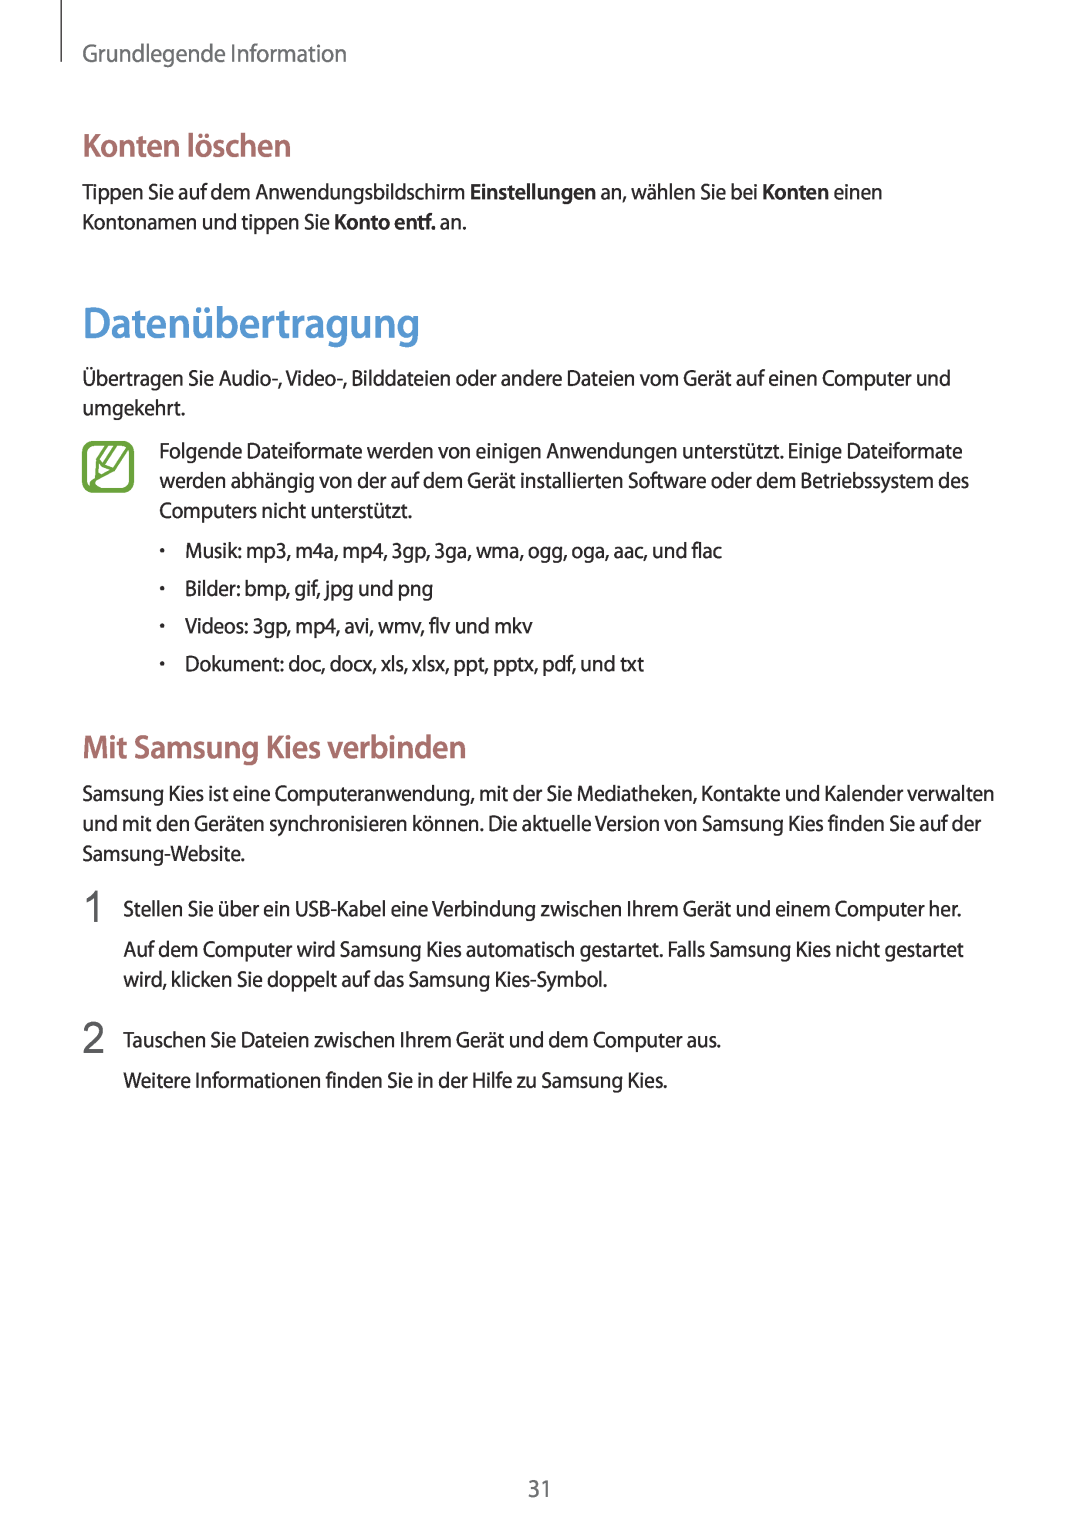 Samsung GT-P5220ZWASFR manual Datenübertragung, Konten löschen, Mit Samsung Kies verbinden, Grundlegende Information 